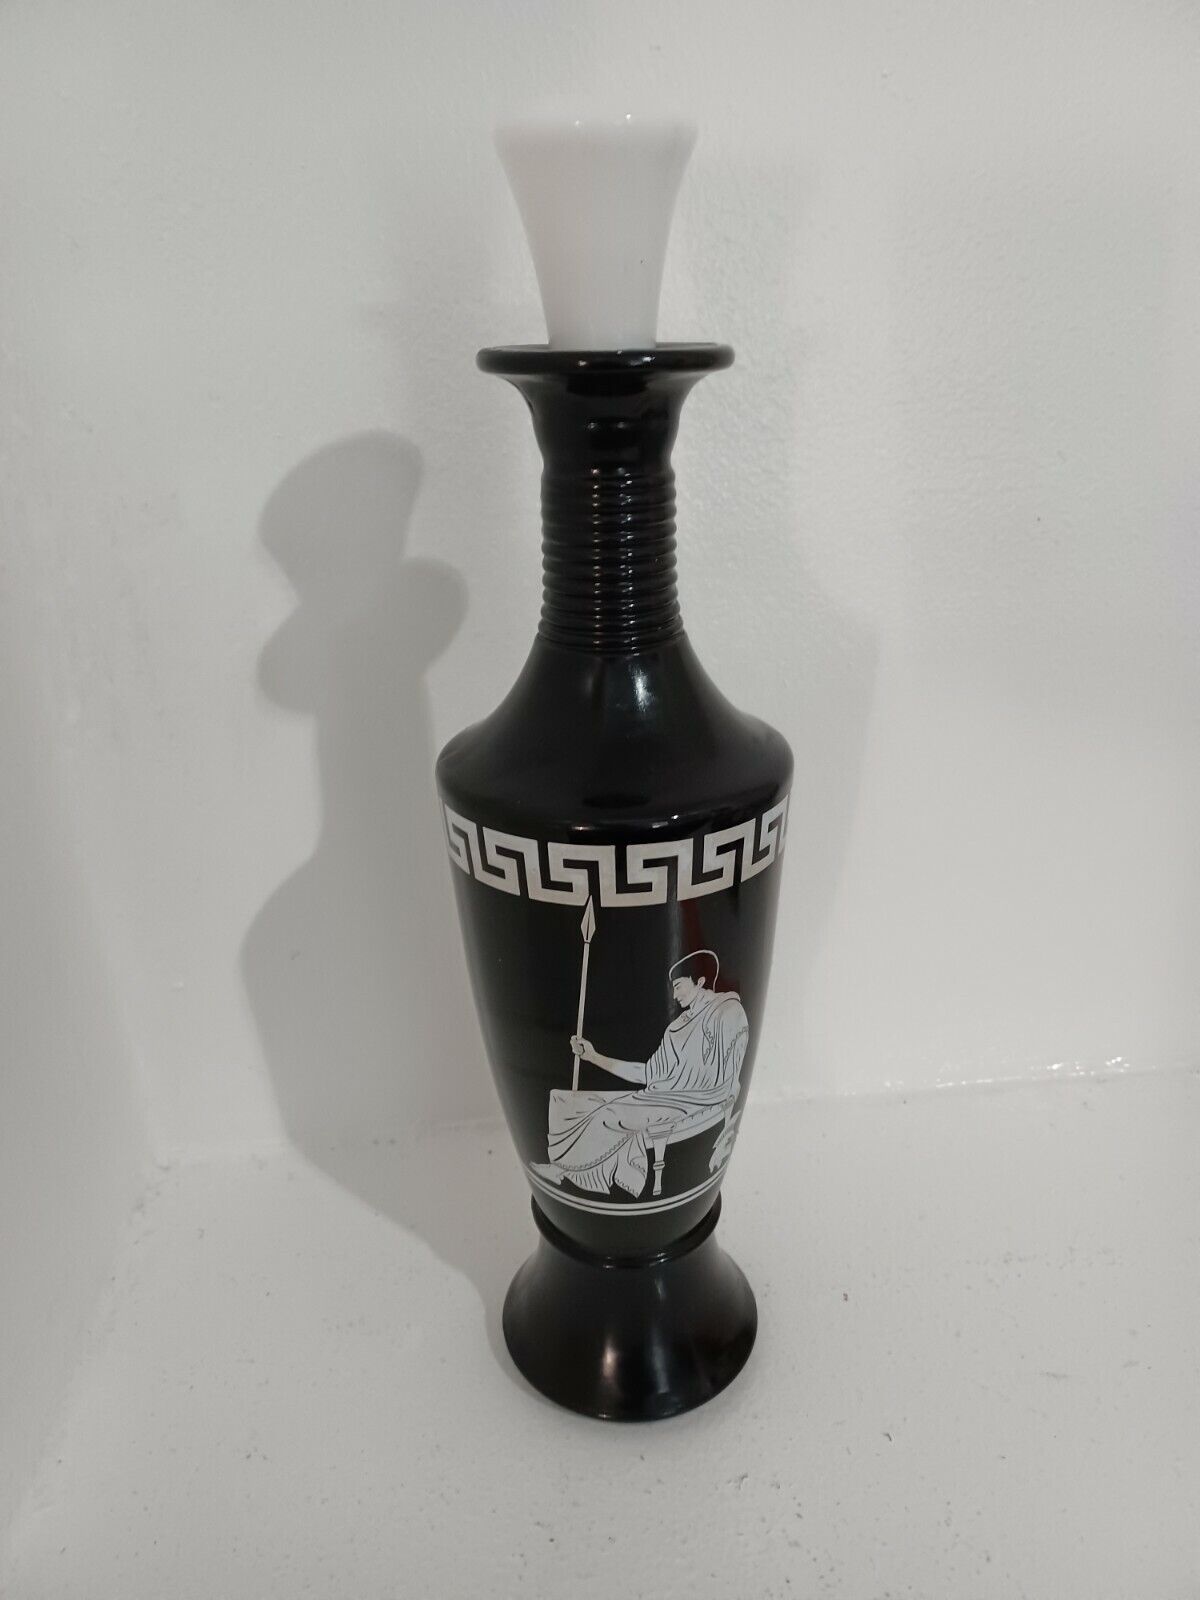  Jim Beam Roman Design Liquor Bottle Decanter Black & White  D-334 119 58. Gift 